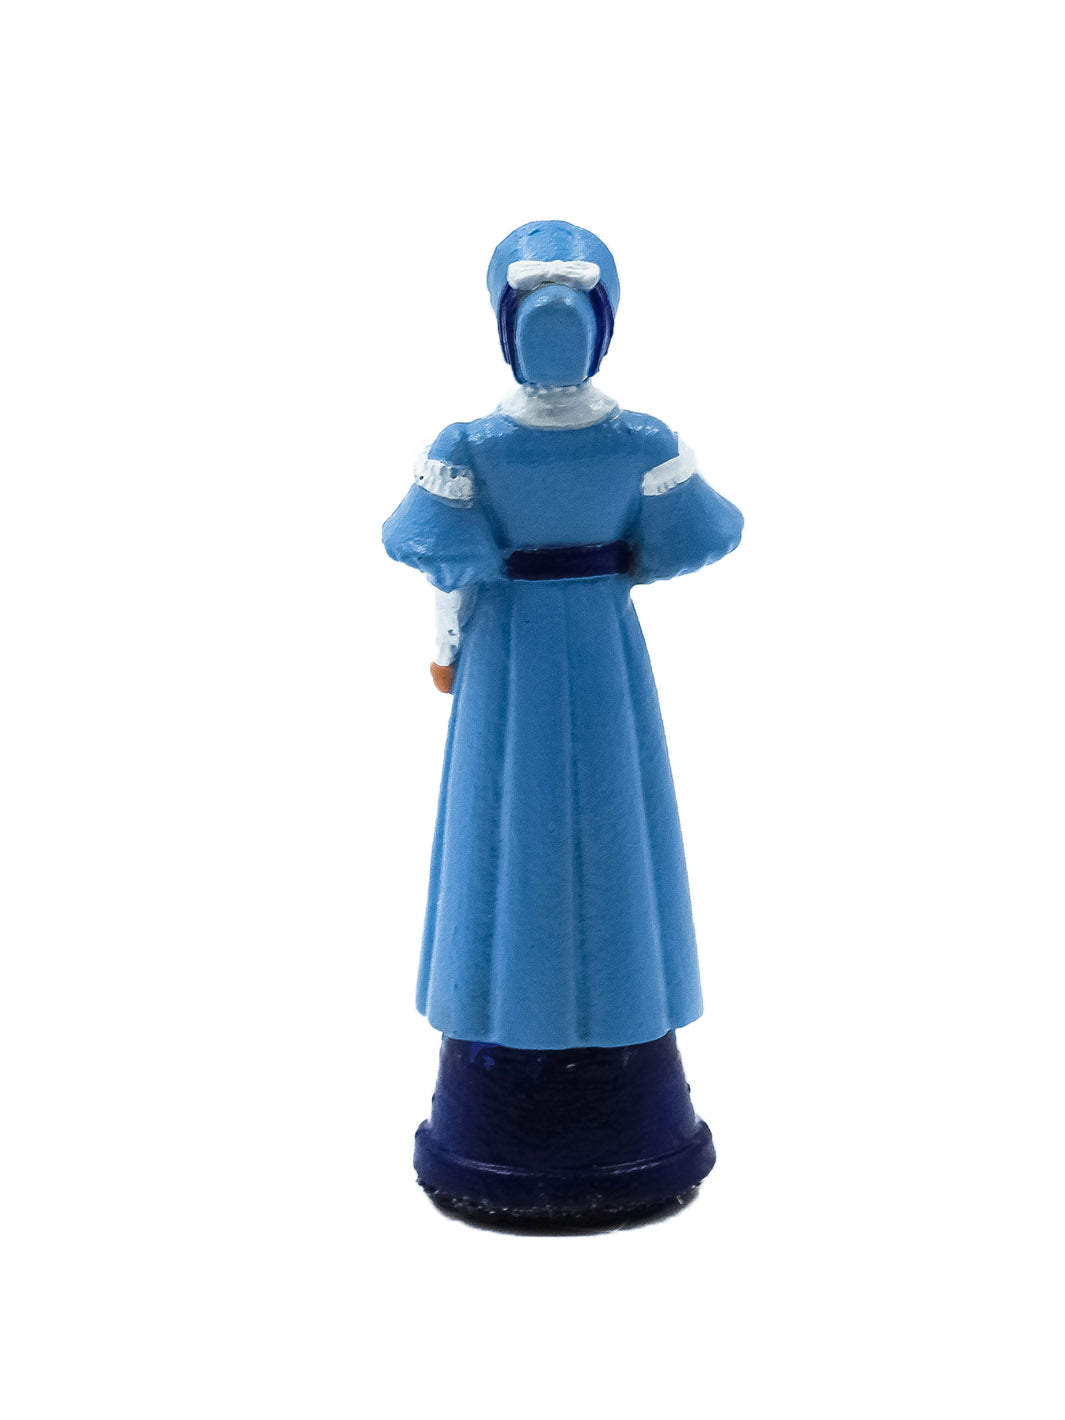 Piece Reine portant une robe bleue avec un bras plié vue de derriere